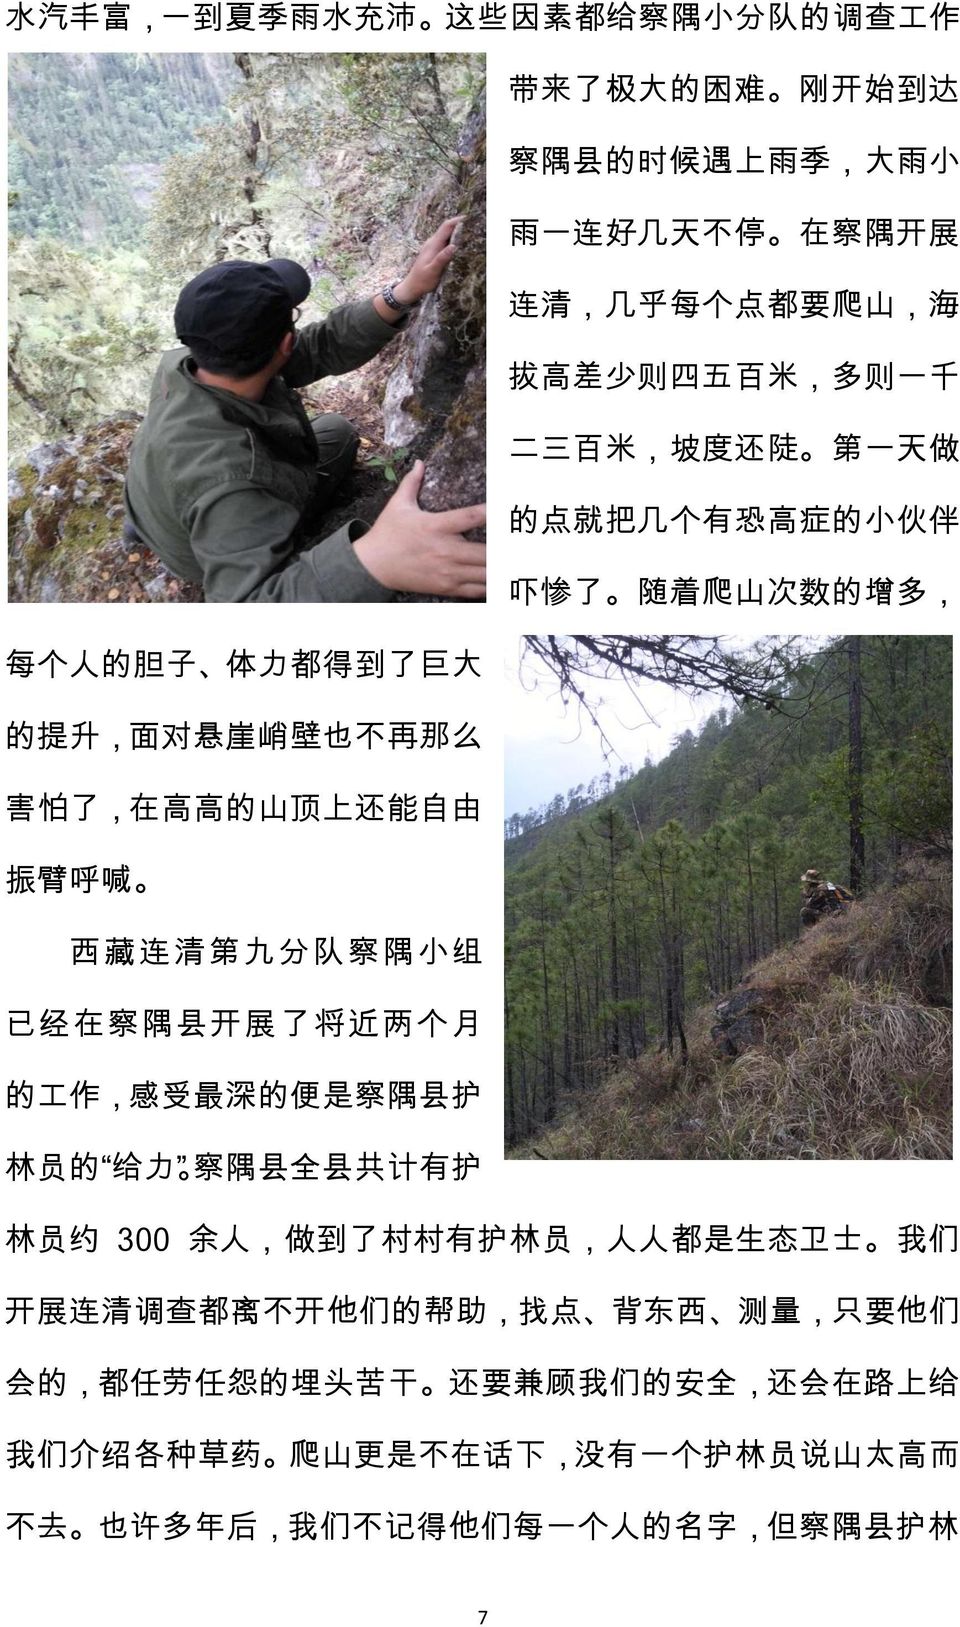 西藏连清第九分队察隅小组 已经在察隅县开展了将近两个月 的工作 感受最深的便是察隅县护 林员的 给力 察隅县全县共计有护 林员约 300 余人 做到了村村有护林员 人人都是生态卫士 我们